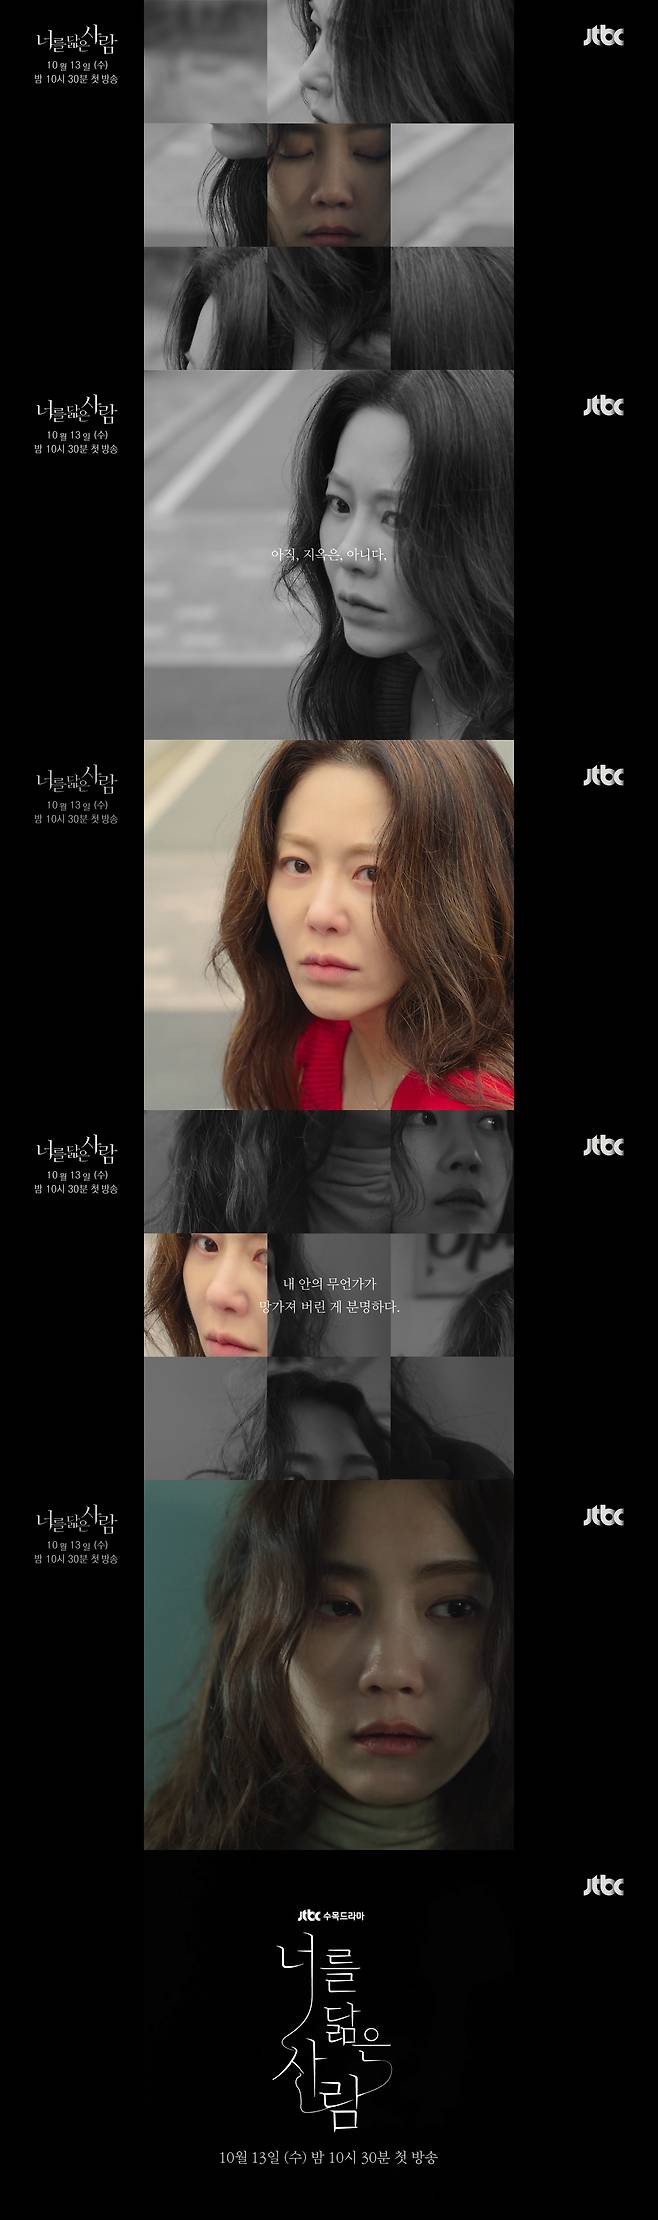 ‘너를 닮은 사람’ 티저 영상이 공개됐다.사진=셀트리온 엔터테인먼트, JTBC스튜디오 제공